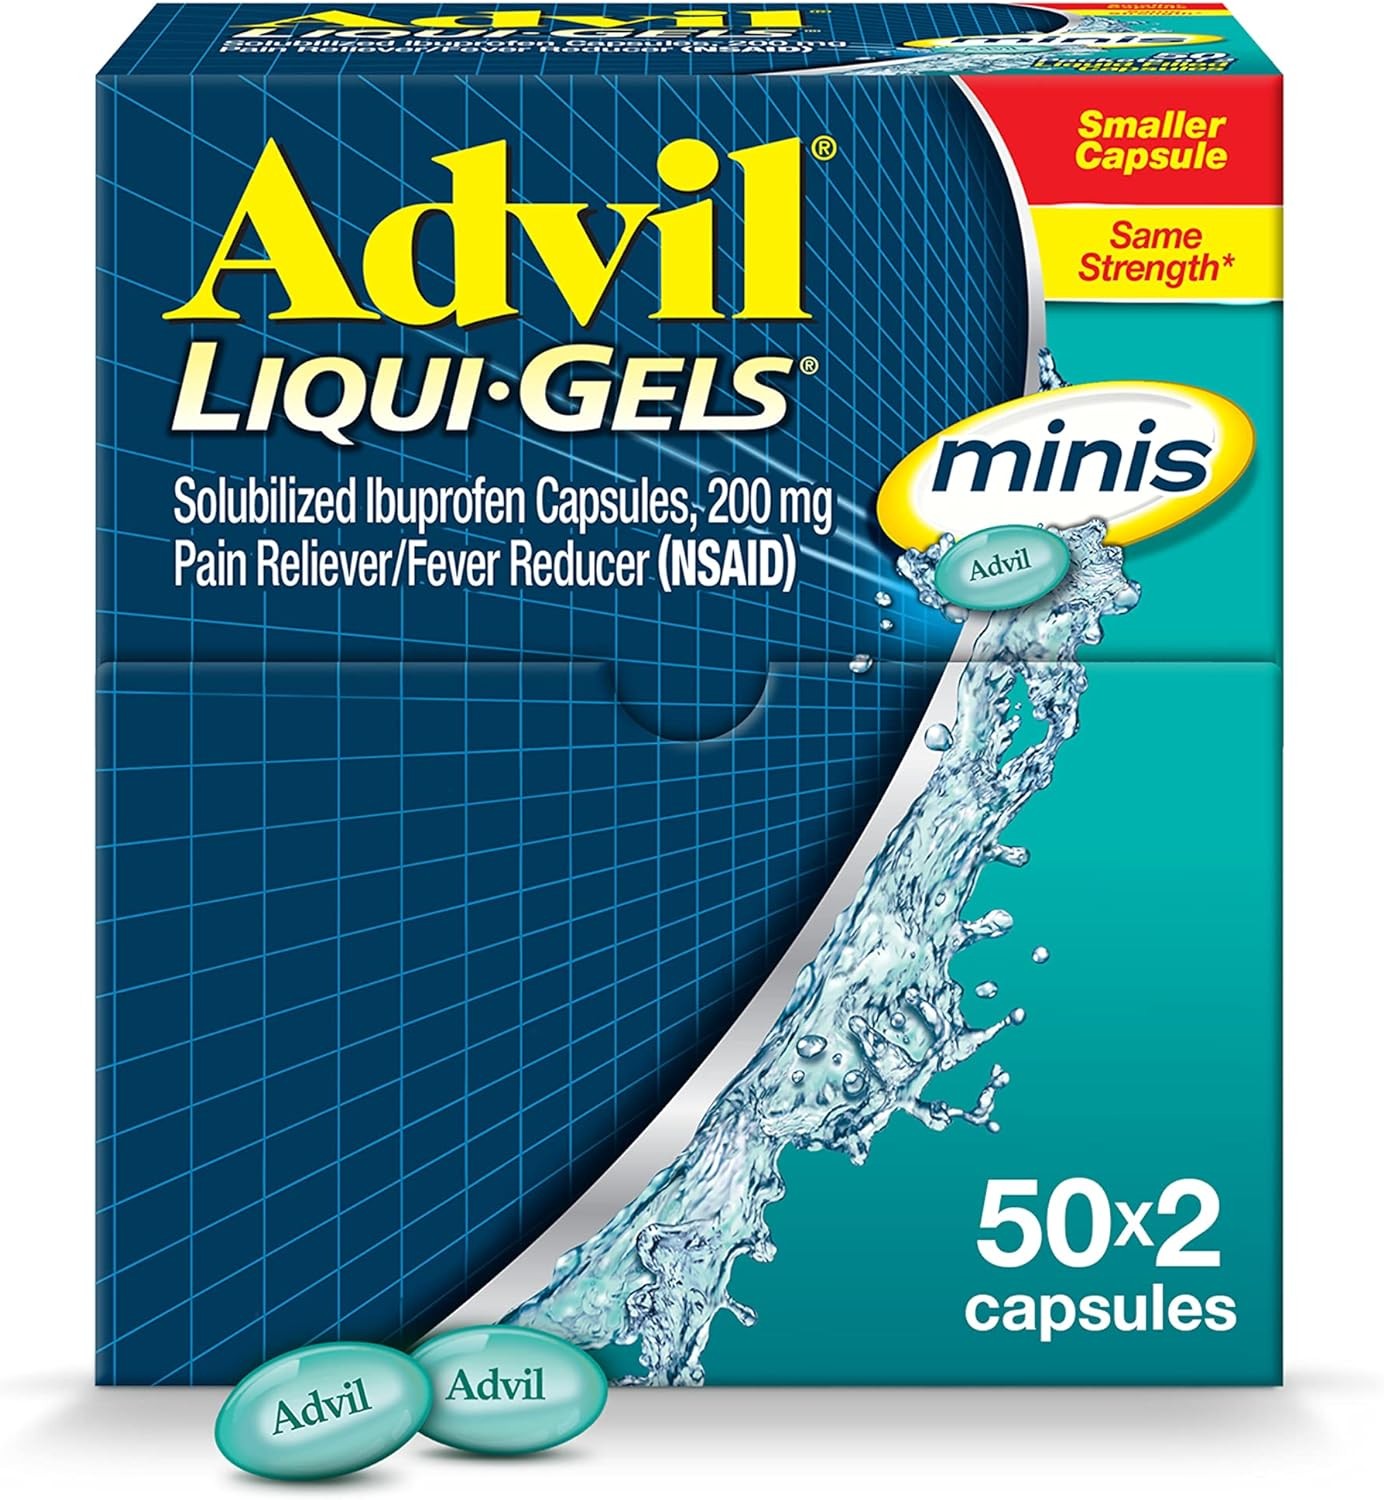 ADVIL LIQUI-GELS CAPSULES 50X2